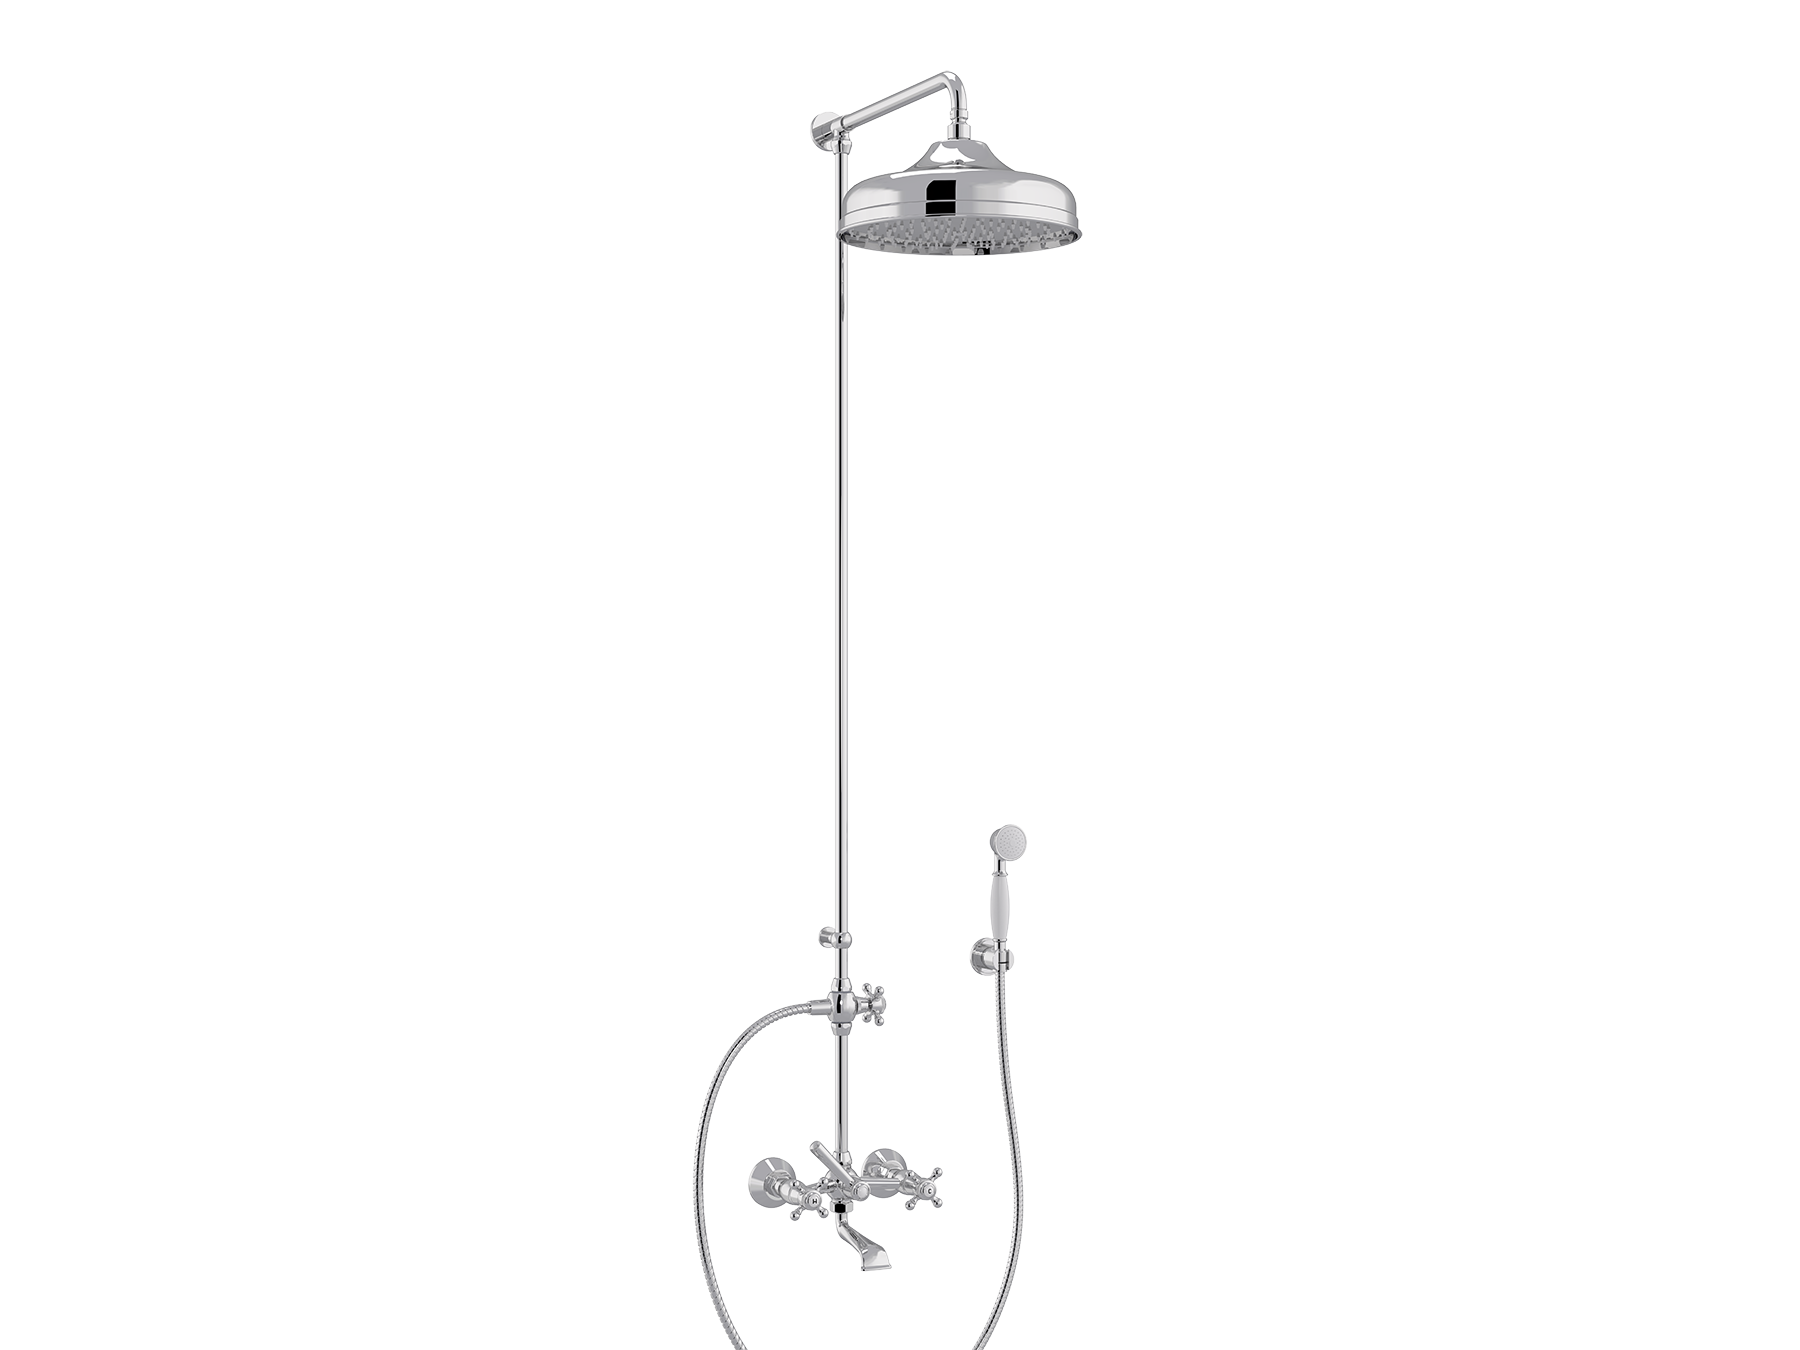 Set bath-shower mixer, head Ø300mm